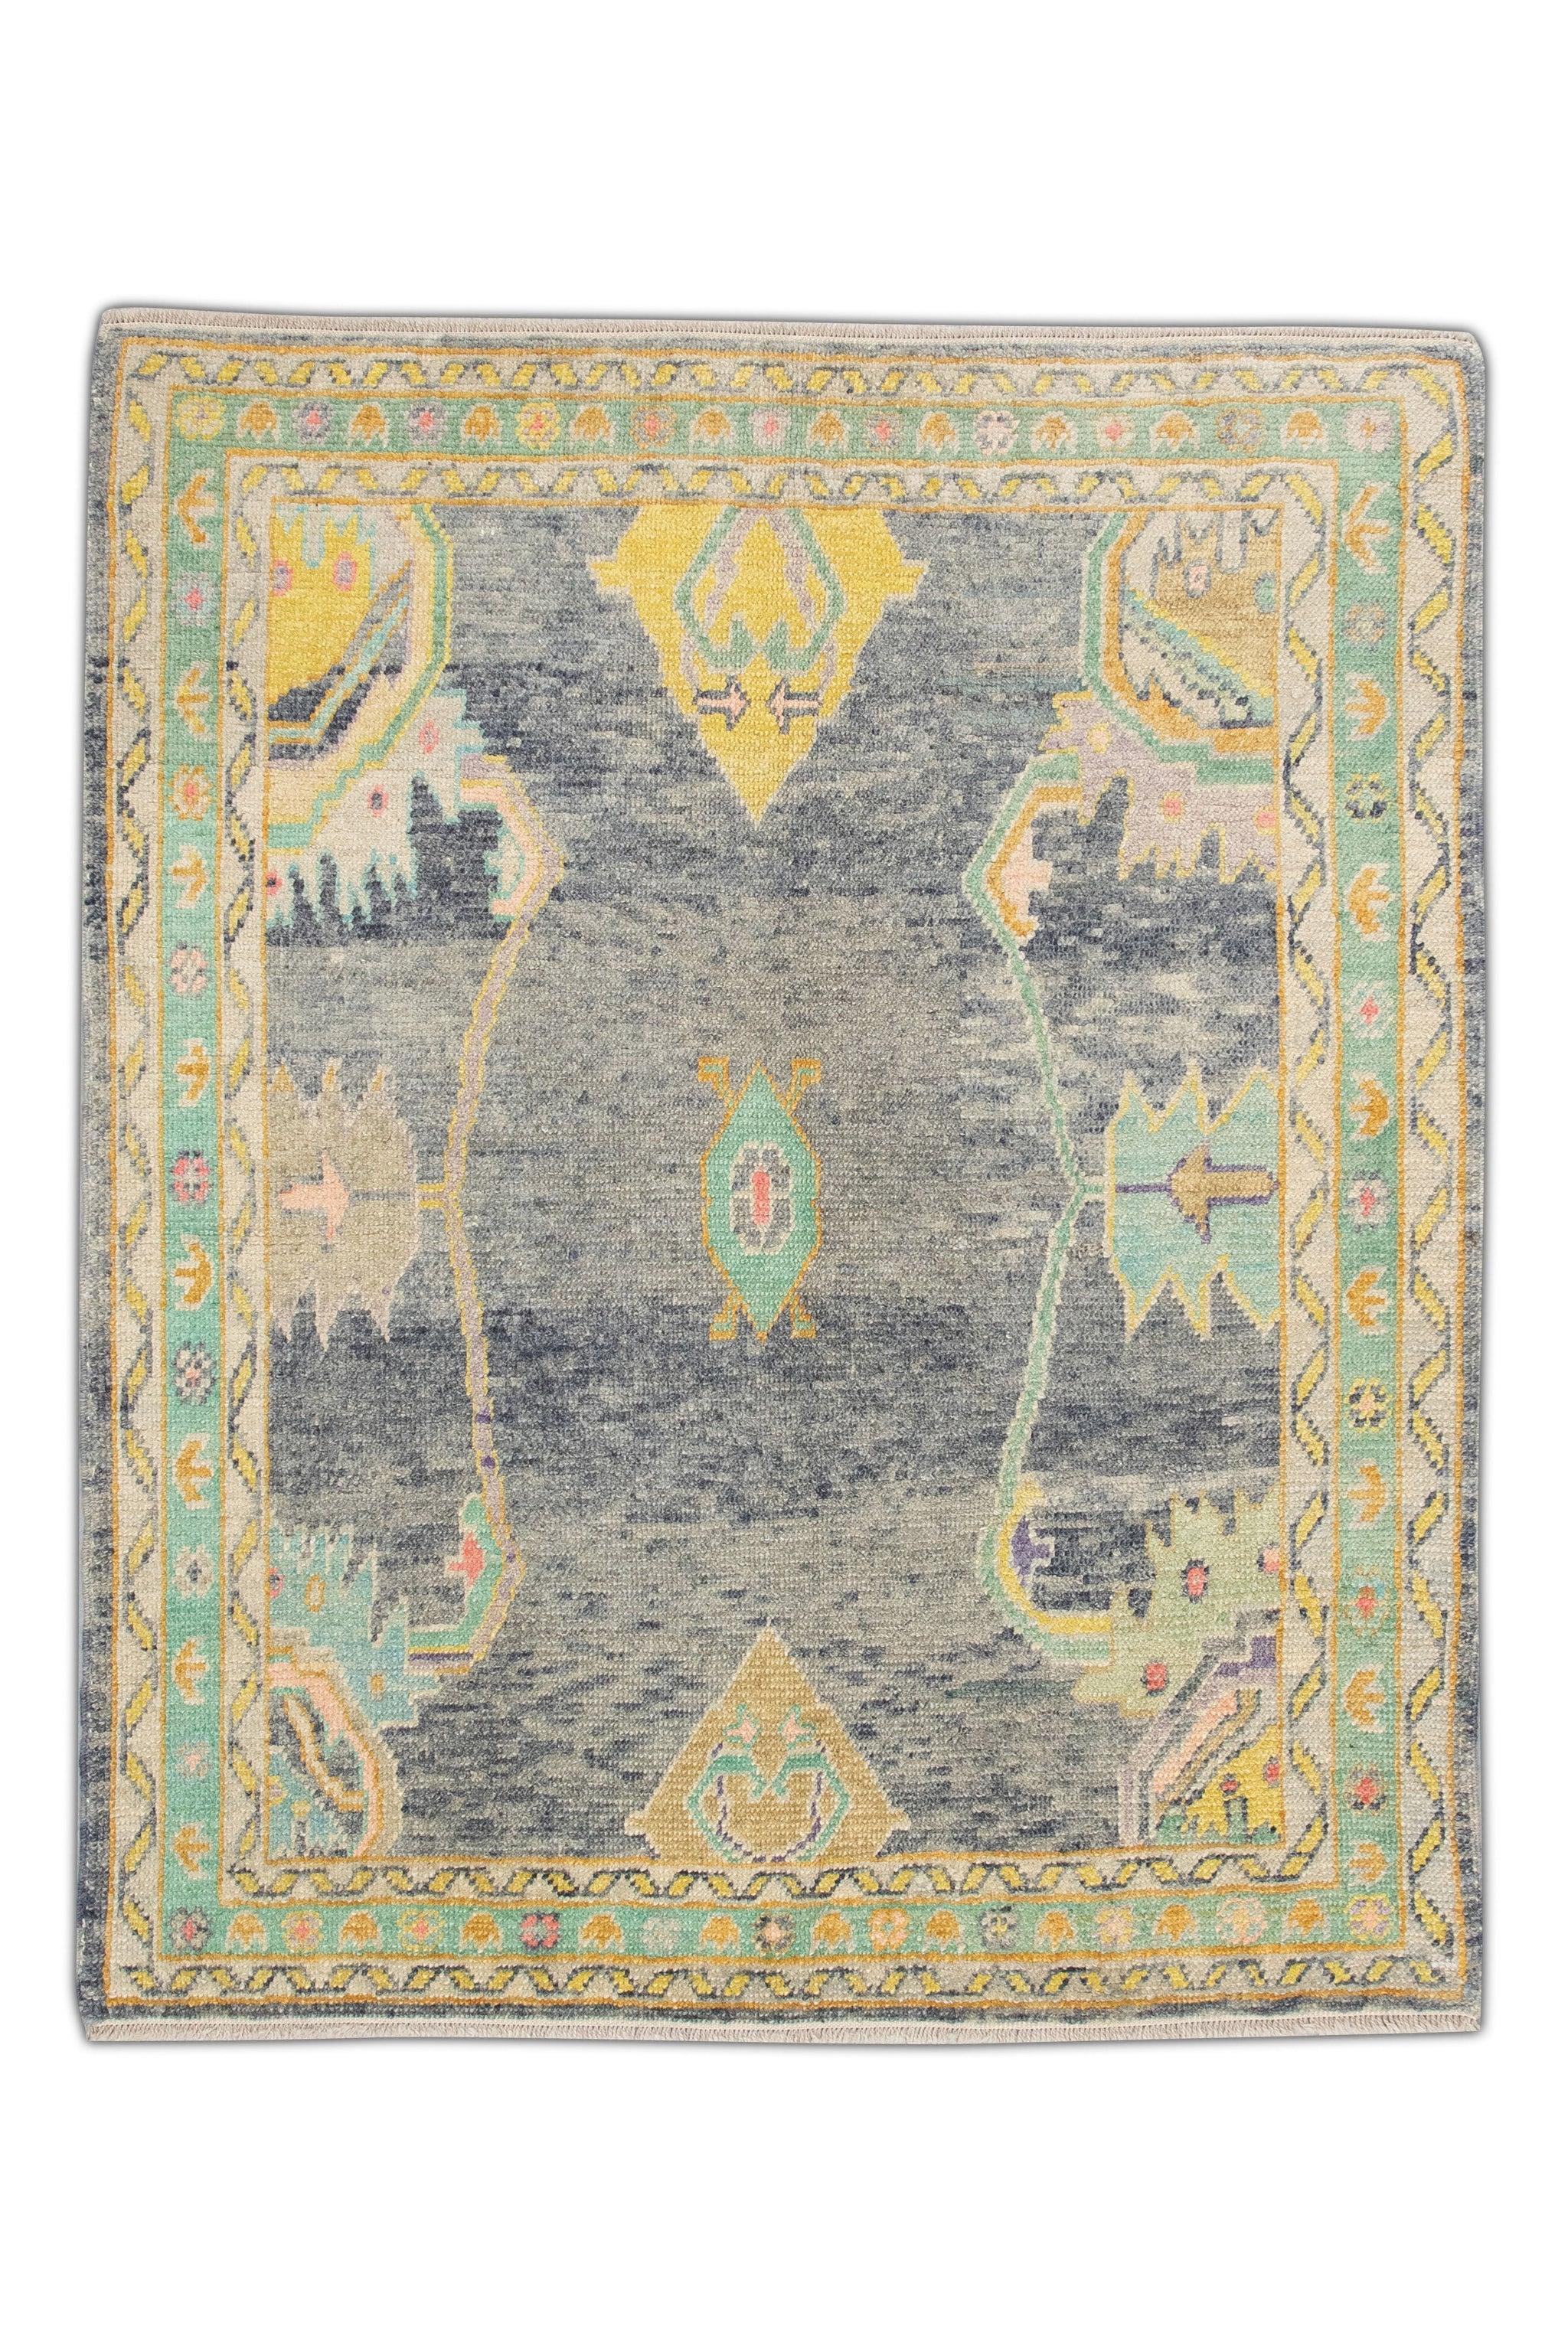 Handwoven Wool Carpet Turkish Oushak Rug 5'7" x 6'11" #4600